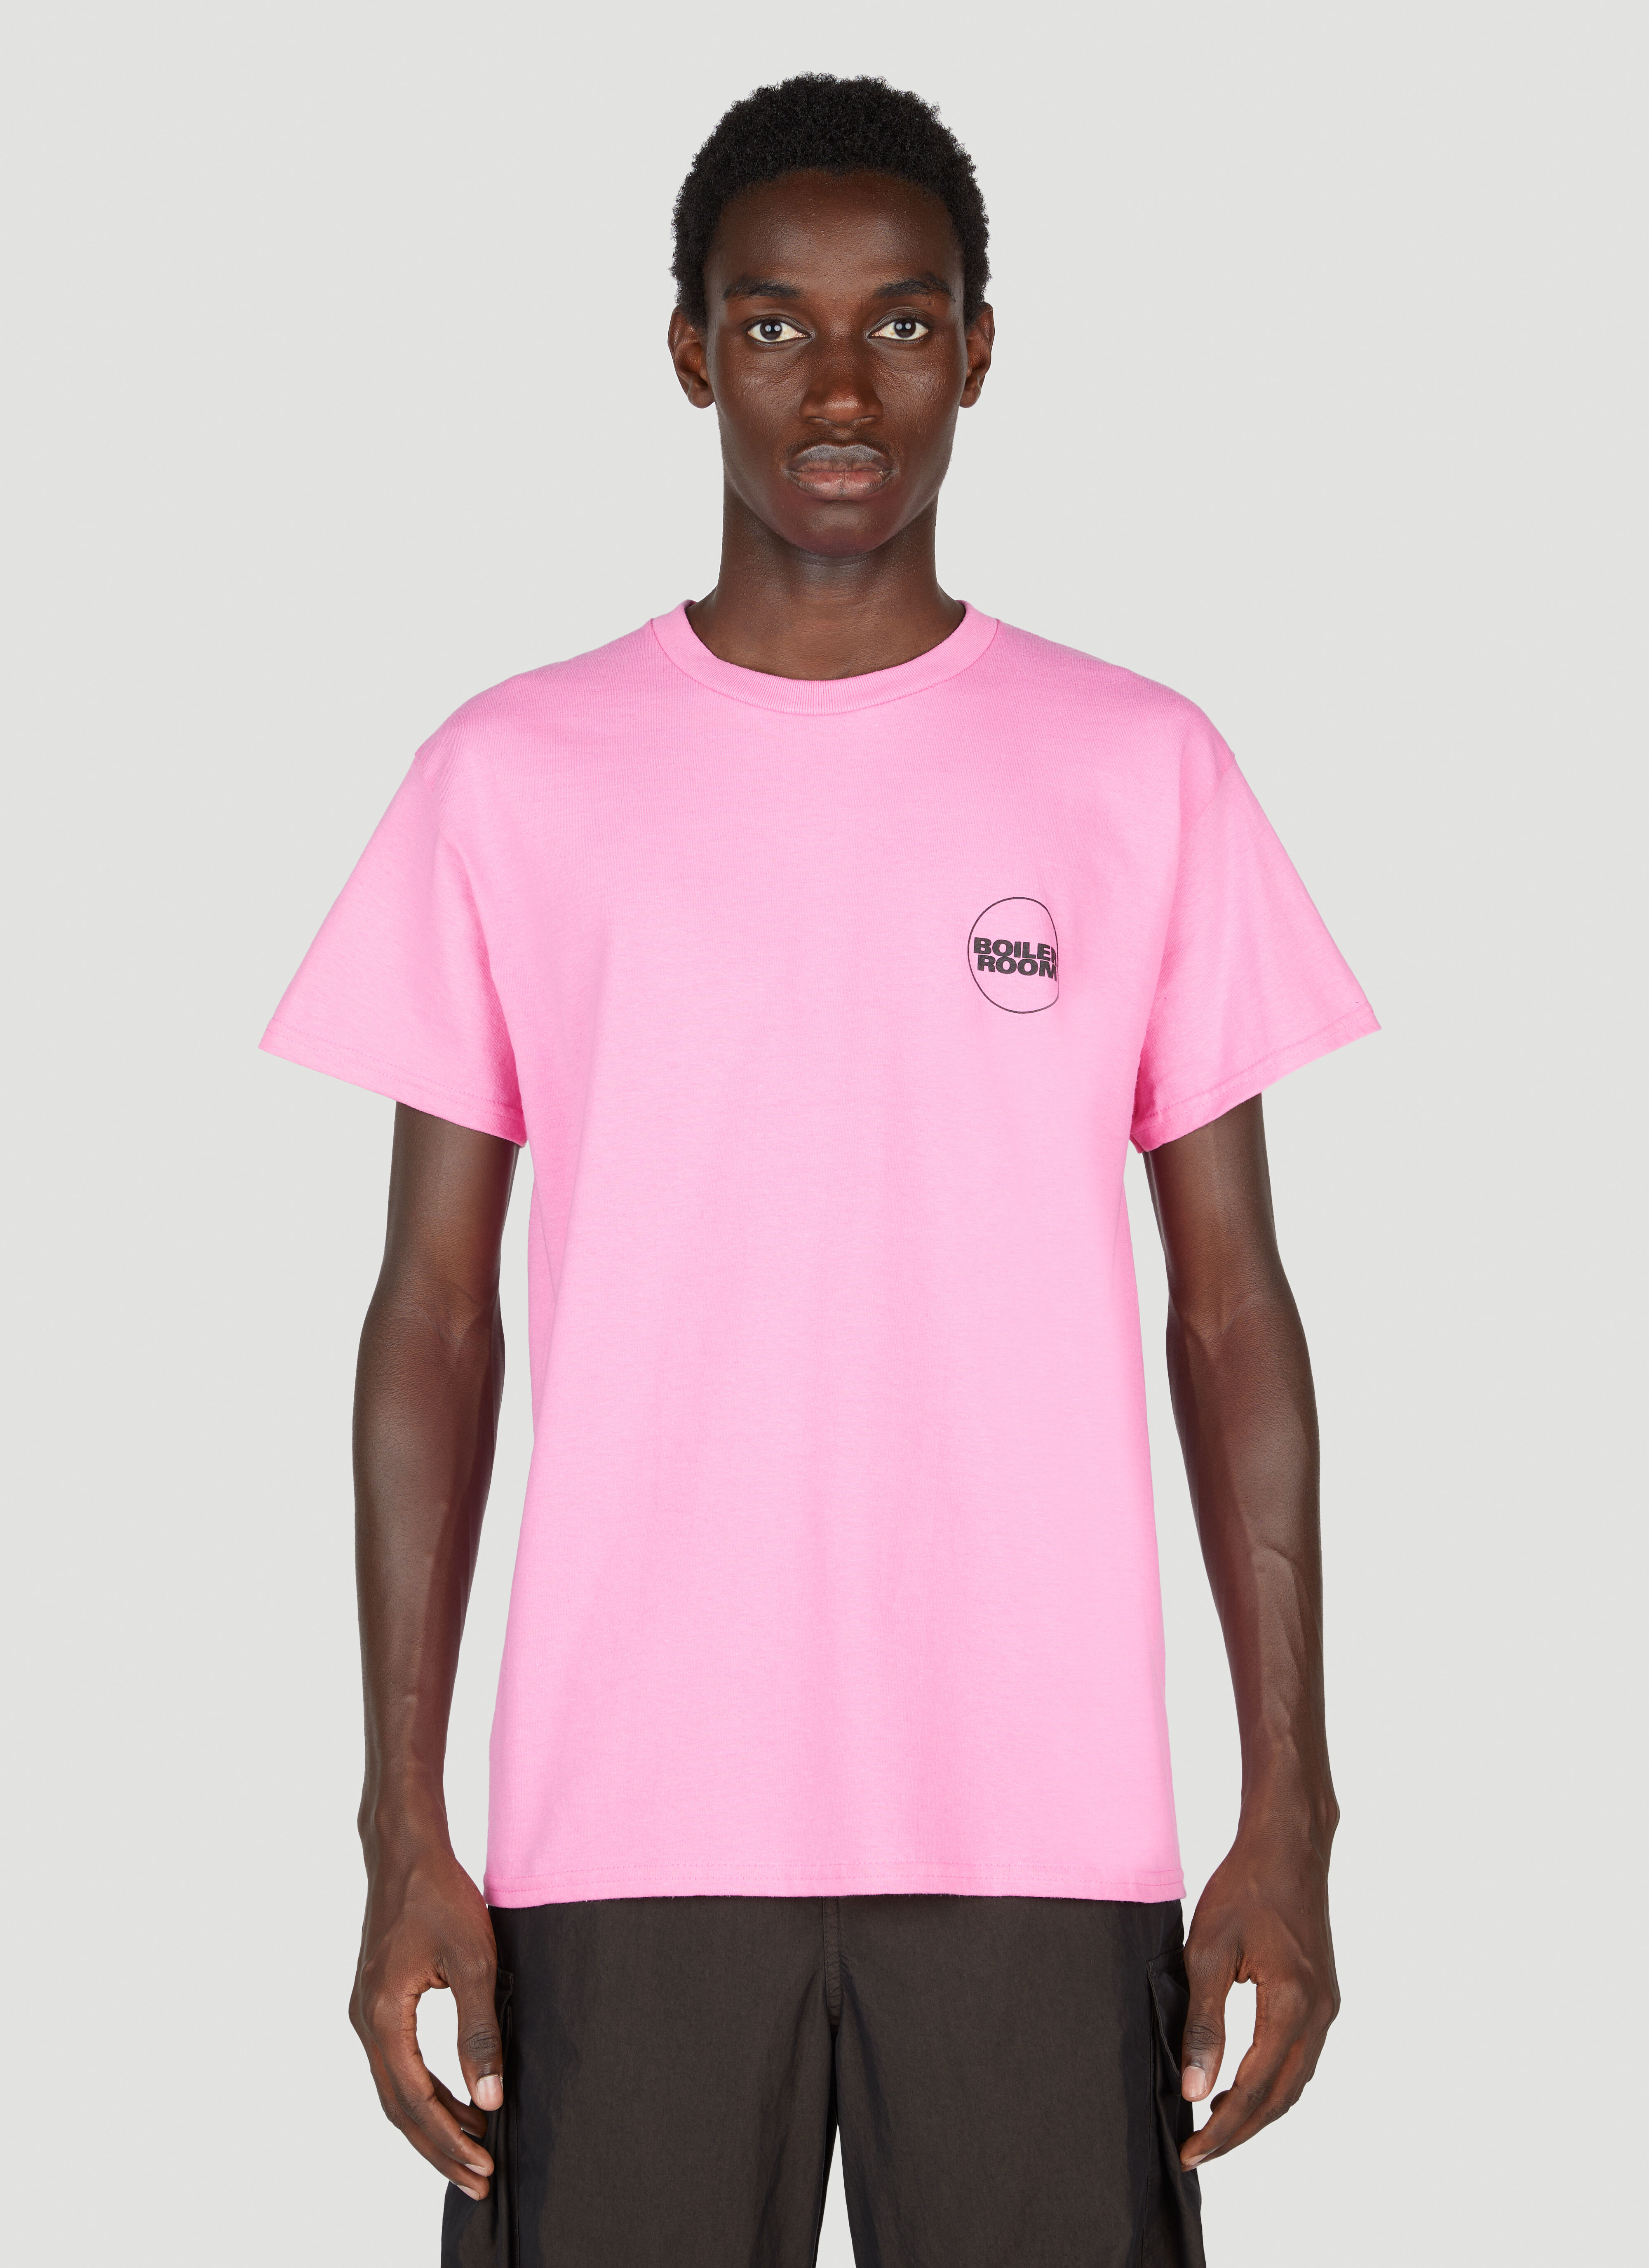 Boiler Room 로고 티셔츠 핑크 bor0155015